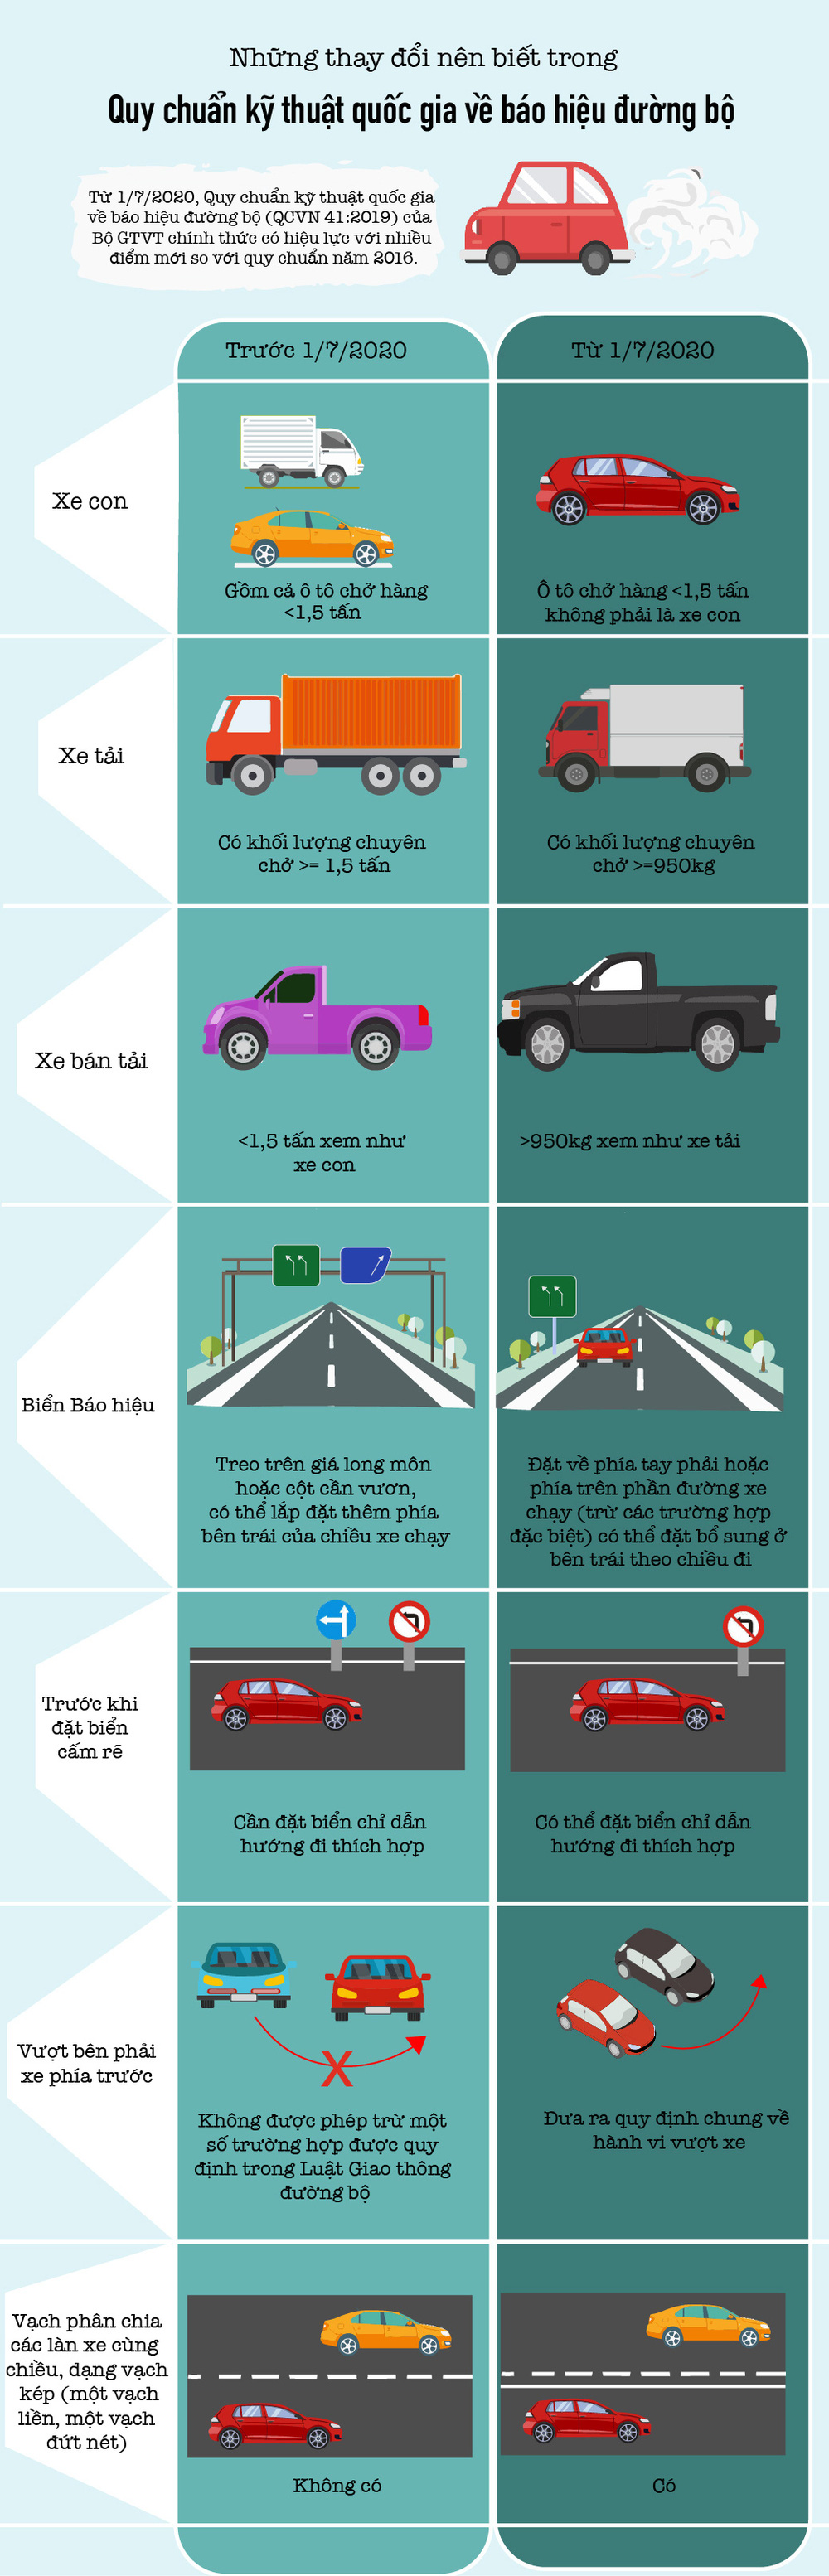 [Infographic] Từ tháng 7/2020, lái xe cần chú ý những thay đổi mới gì về báo hiệu đường bộ? - Ảnh 1.